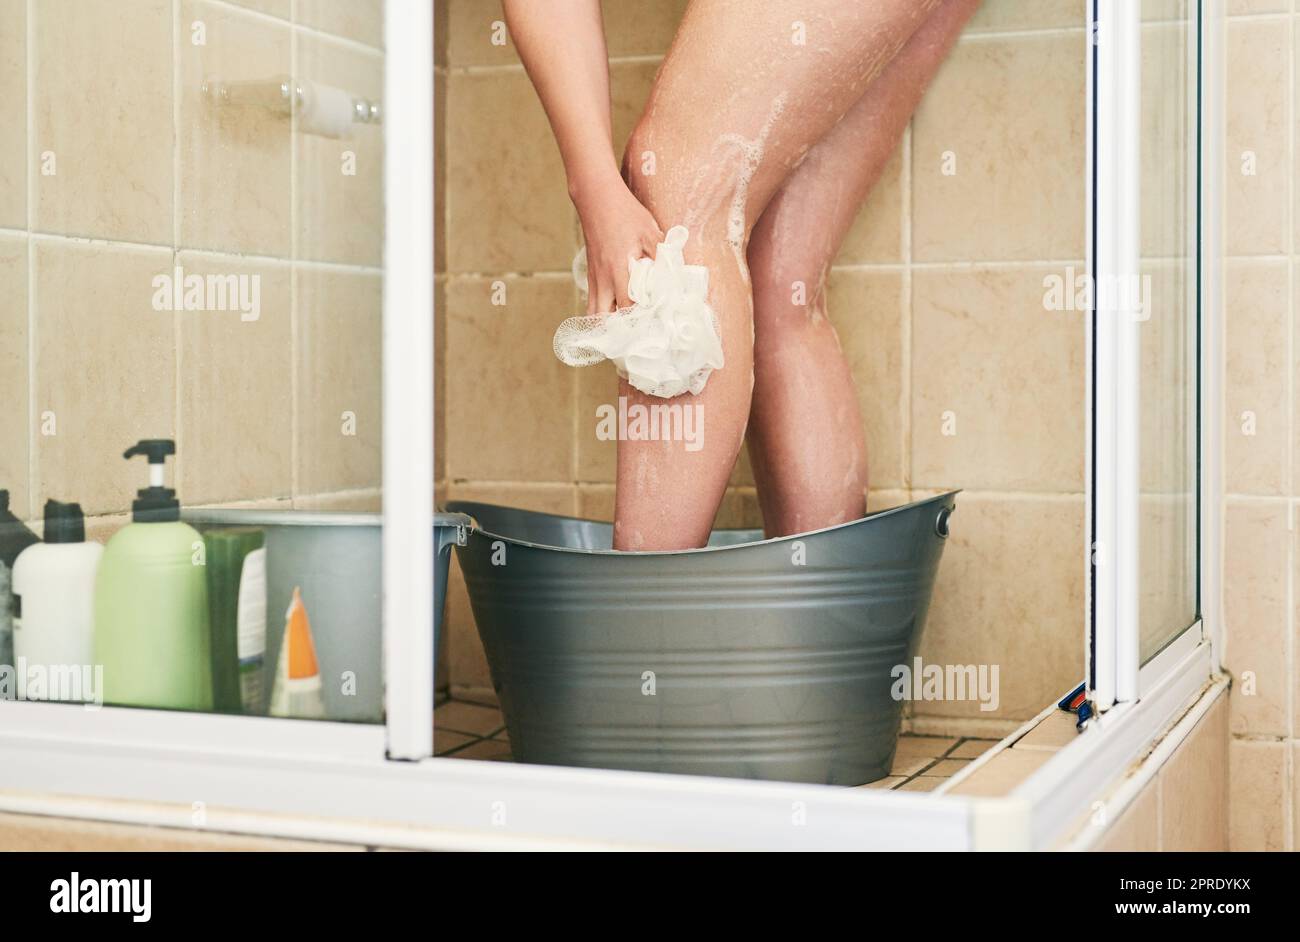 Es gibt einfache Möglichkeiten, Wasser zu sparen. Eine unkenntliche Frau wäscht in einem Eimer, der zu Hause in die Dusche gestellt wurde. Stockfoto